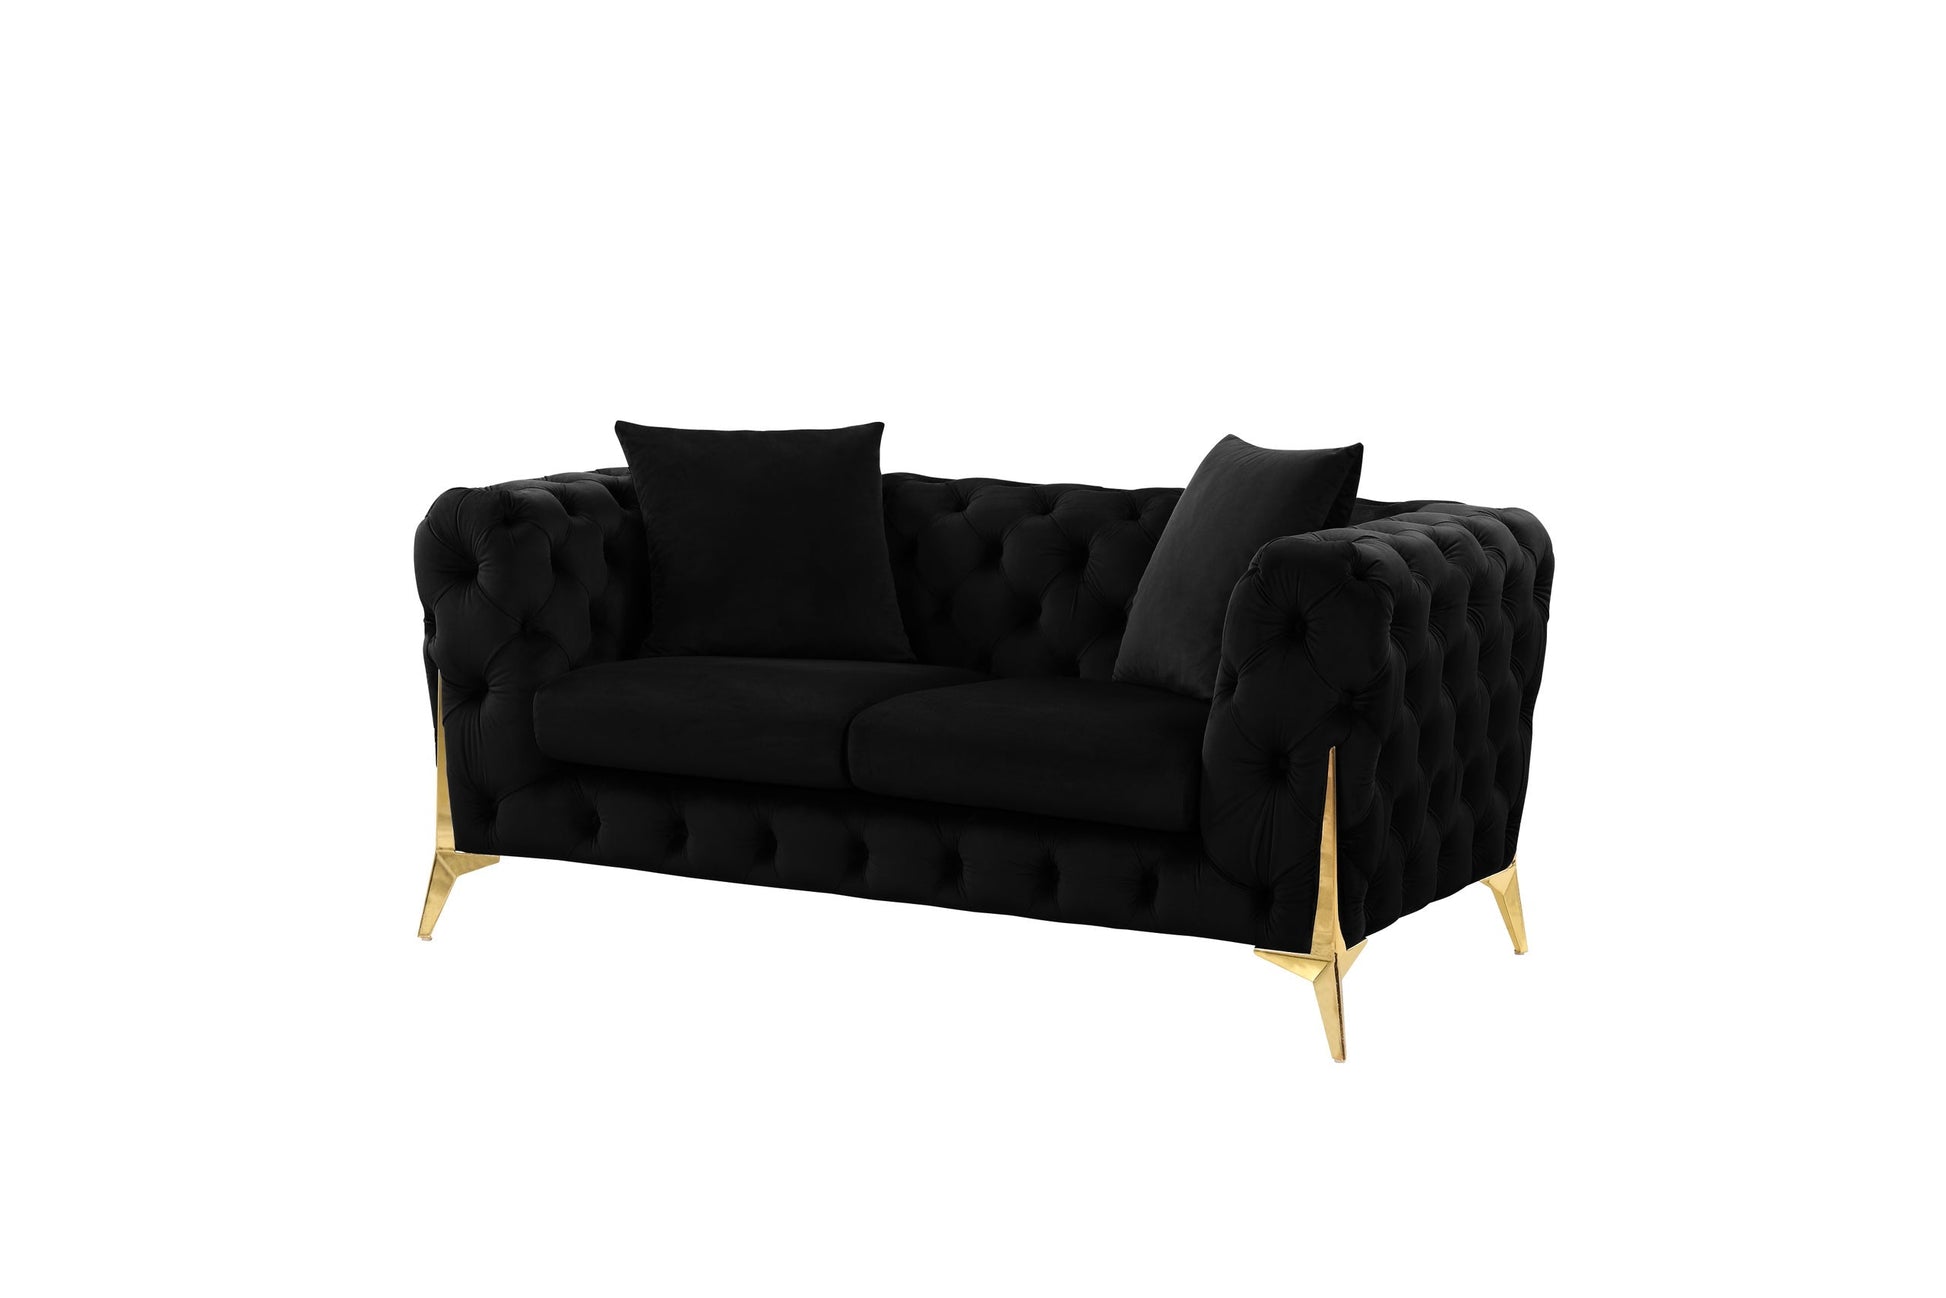 Star Black Modern Contemporary Velvet Upholstered Tufted 2Pc Sofa & Loveseat Set